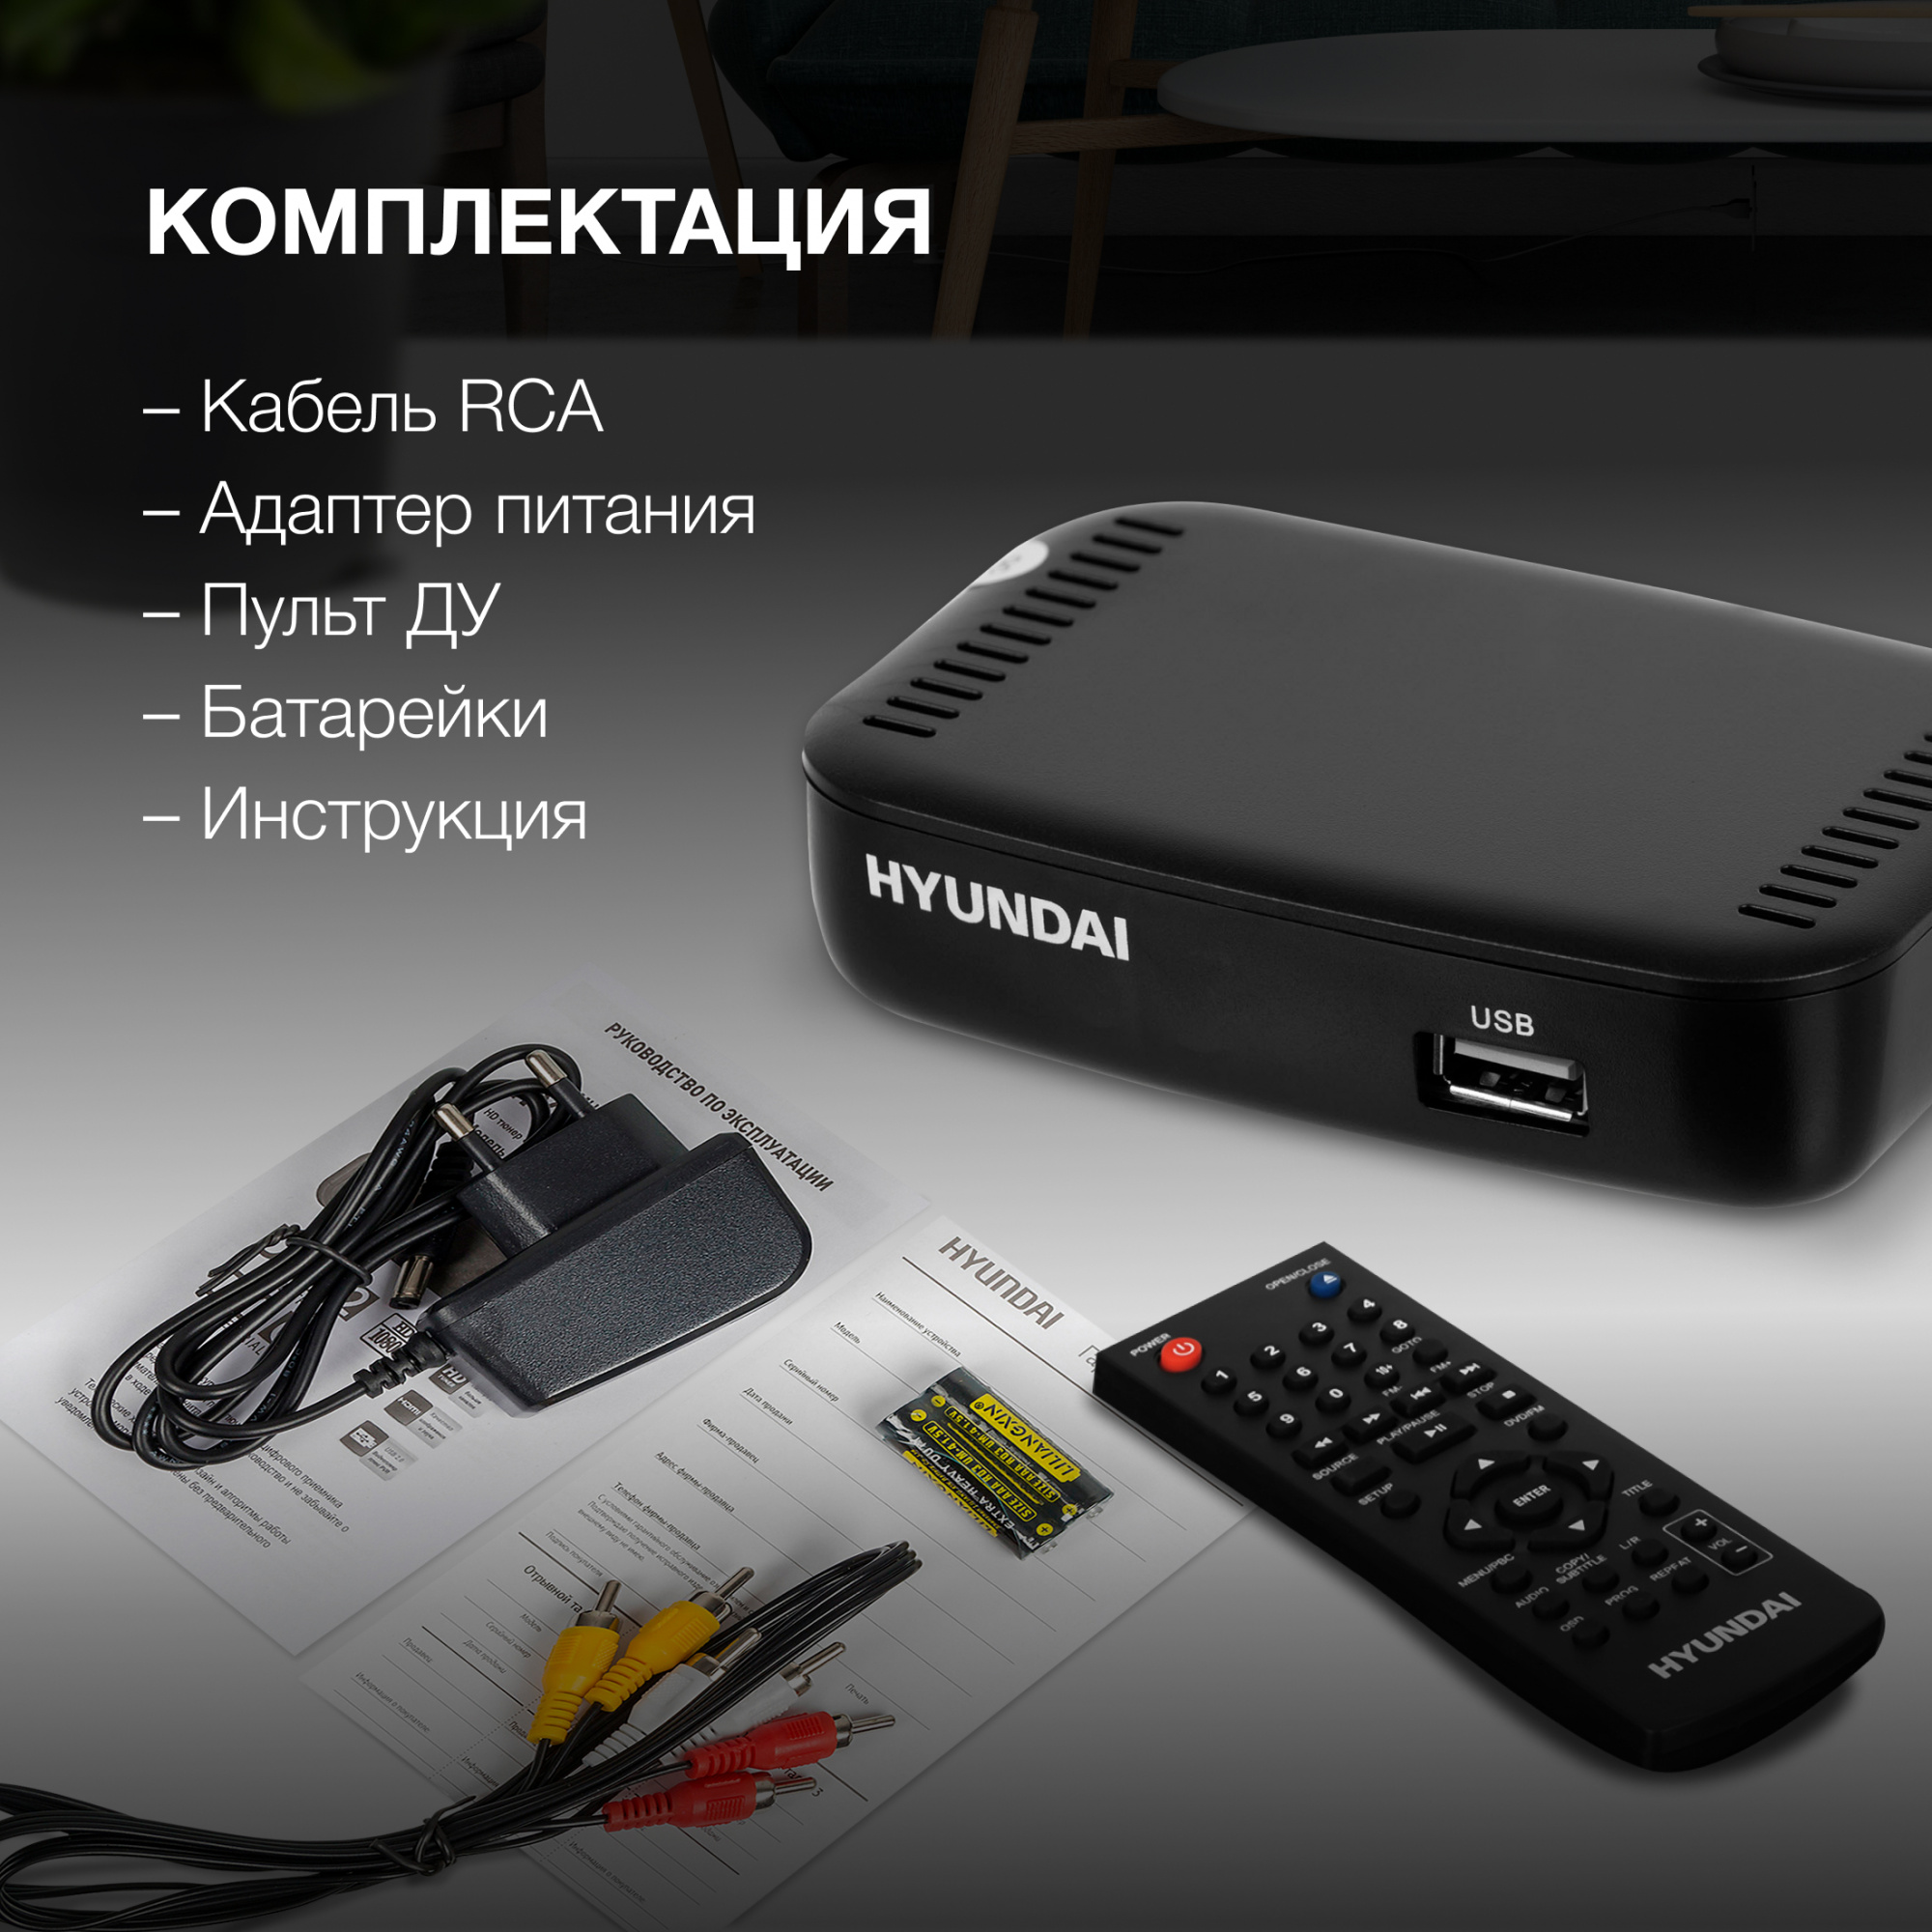 Ресивер DVB-T2 Hyundai H-DVB460 черный